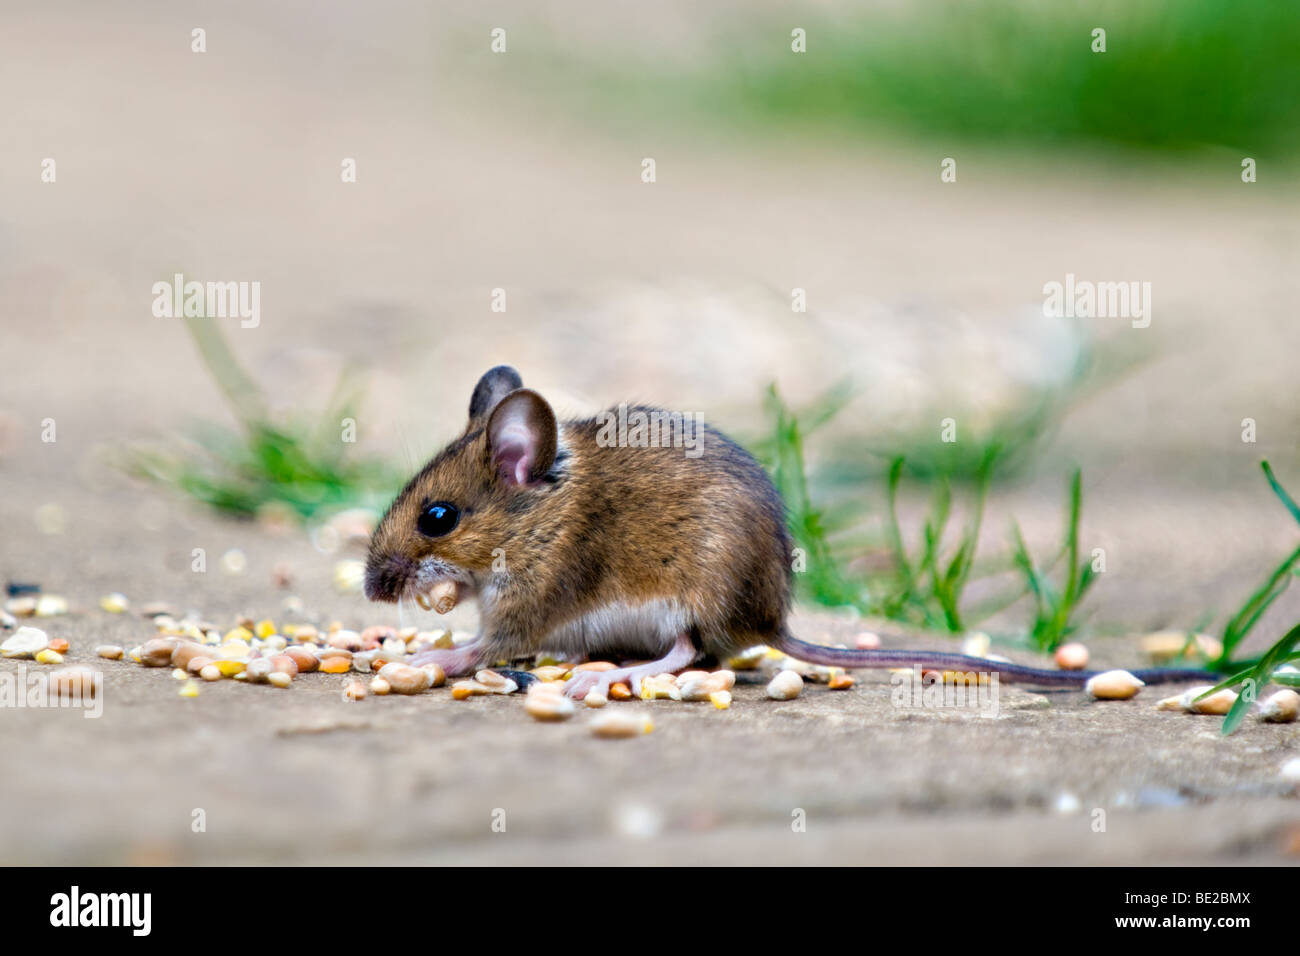 Waldmaus, auch bekannt als Feld oder Long-tailed Maus Essen Vogelfutter auf  Terrasse im Garten mit Mund gefüllt mit Samen Stockfotografie - Alamy